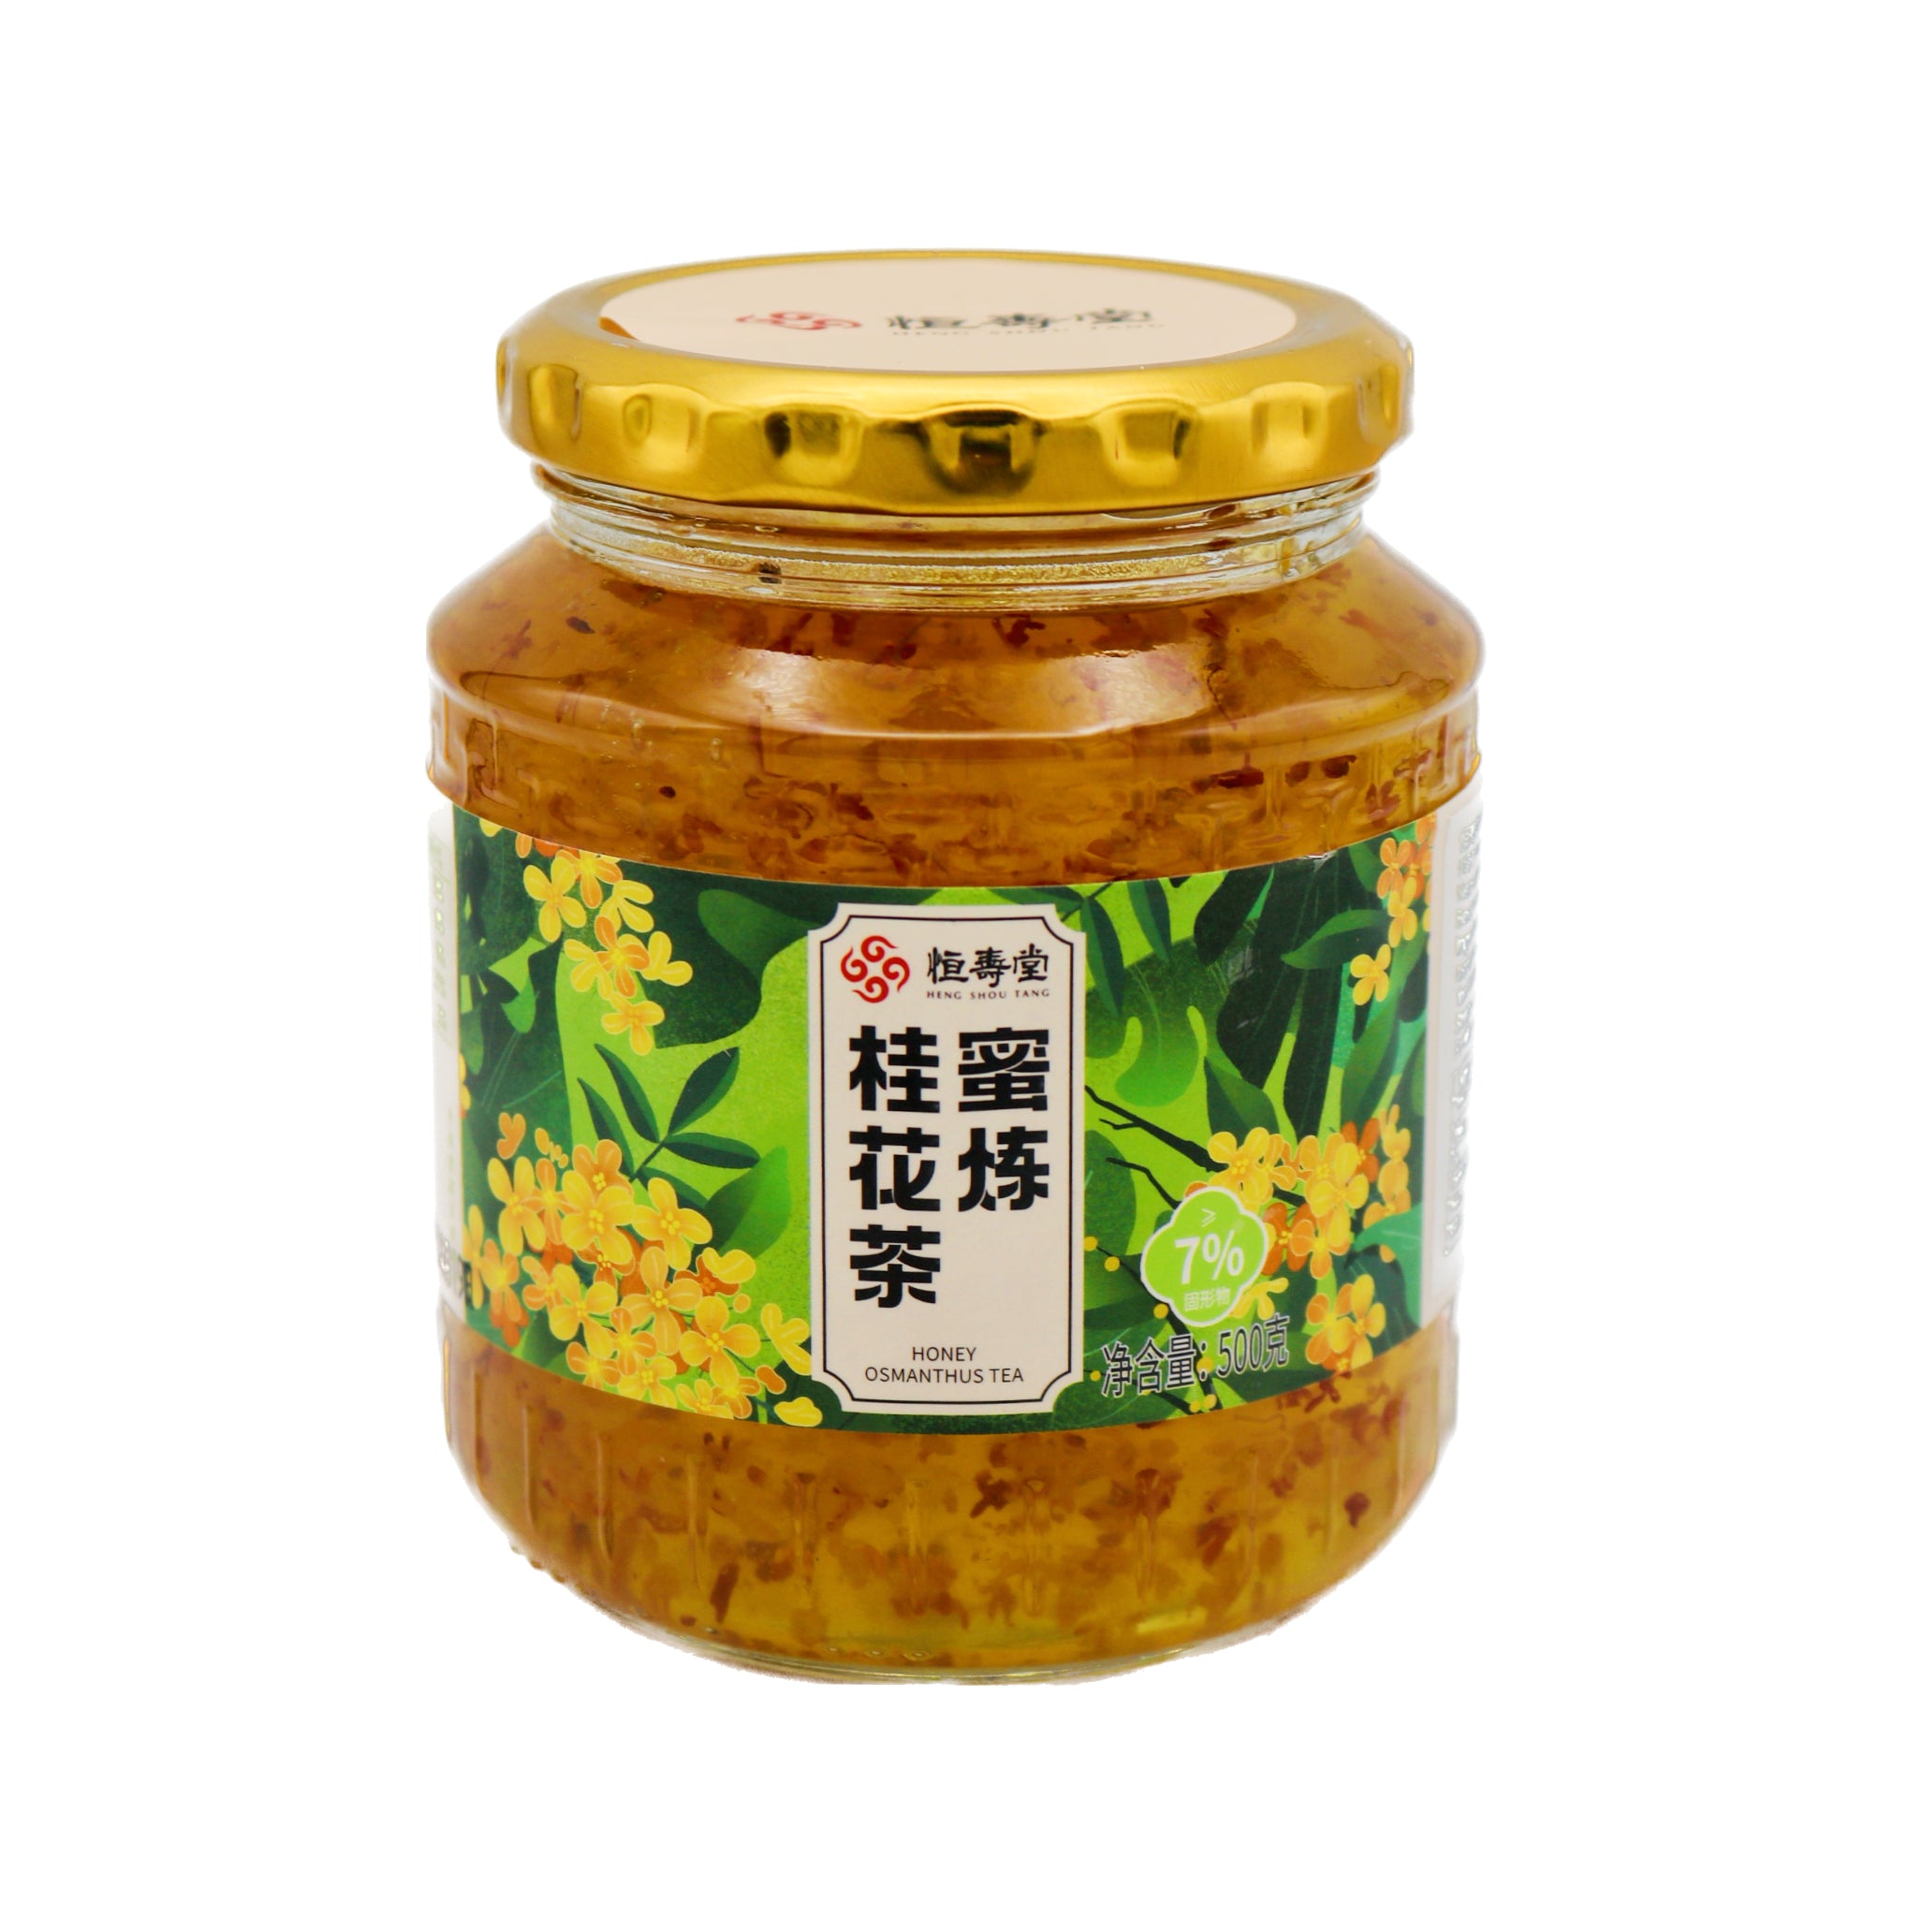 Heng Shou Tang Honey Osmanthus Tea 恆壽堂蜜煉桂花茶 500g - Tuk Tuk Mart